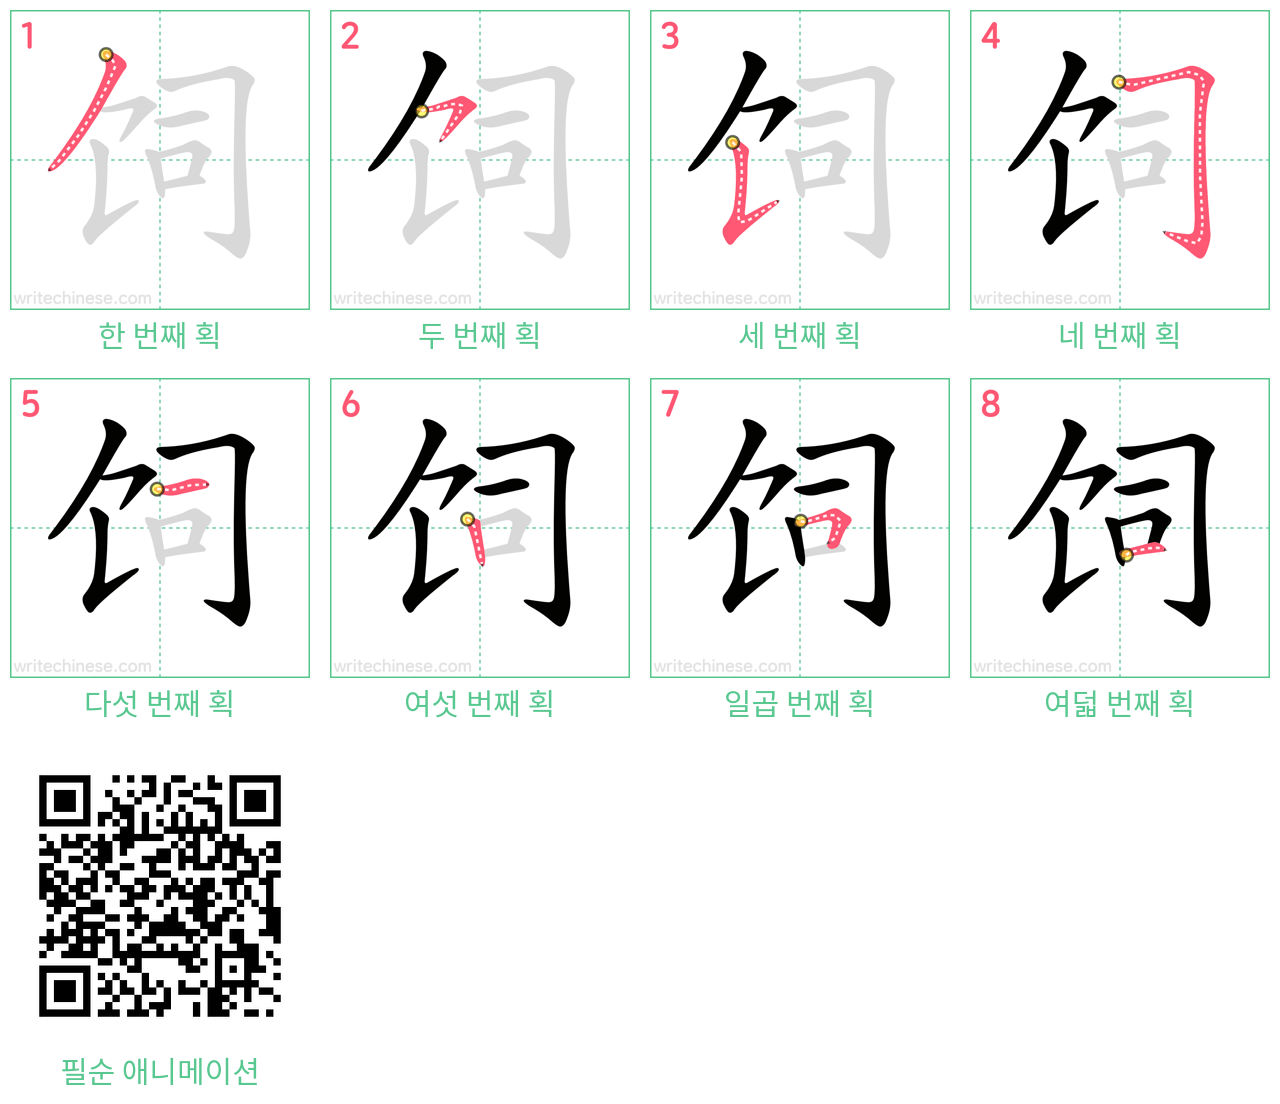 饲 step-by-step stroke order diagrams